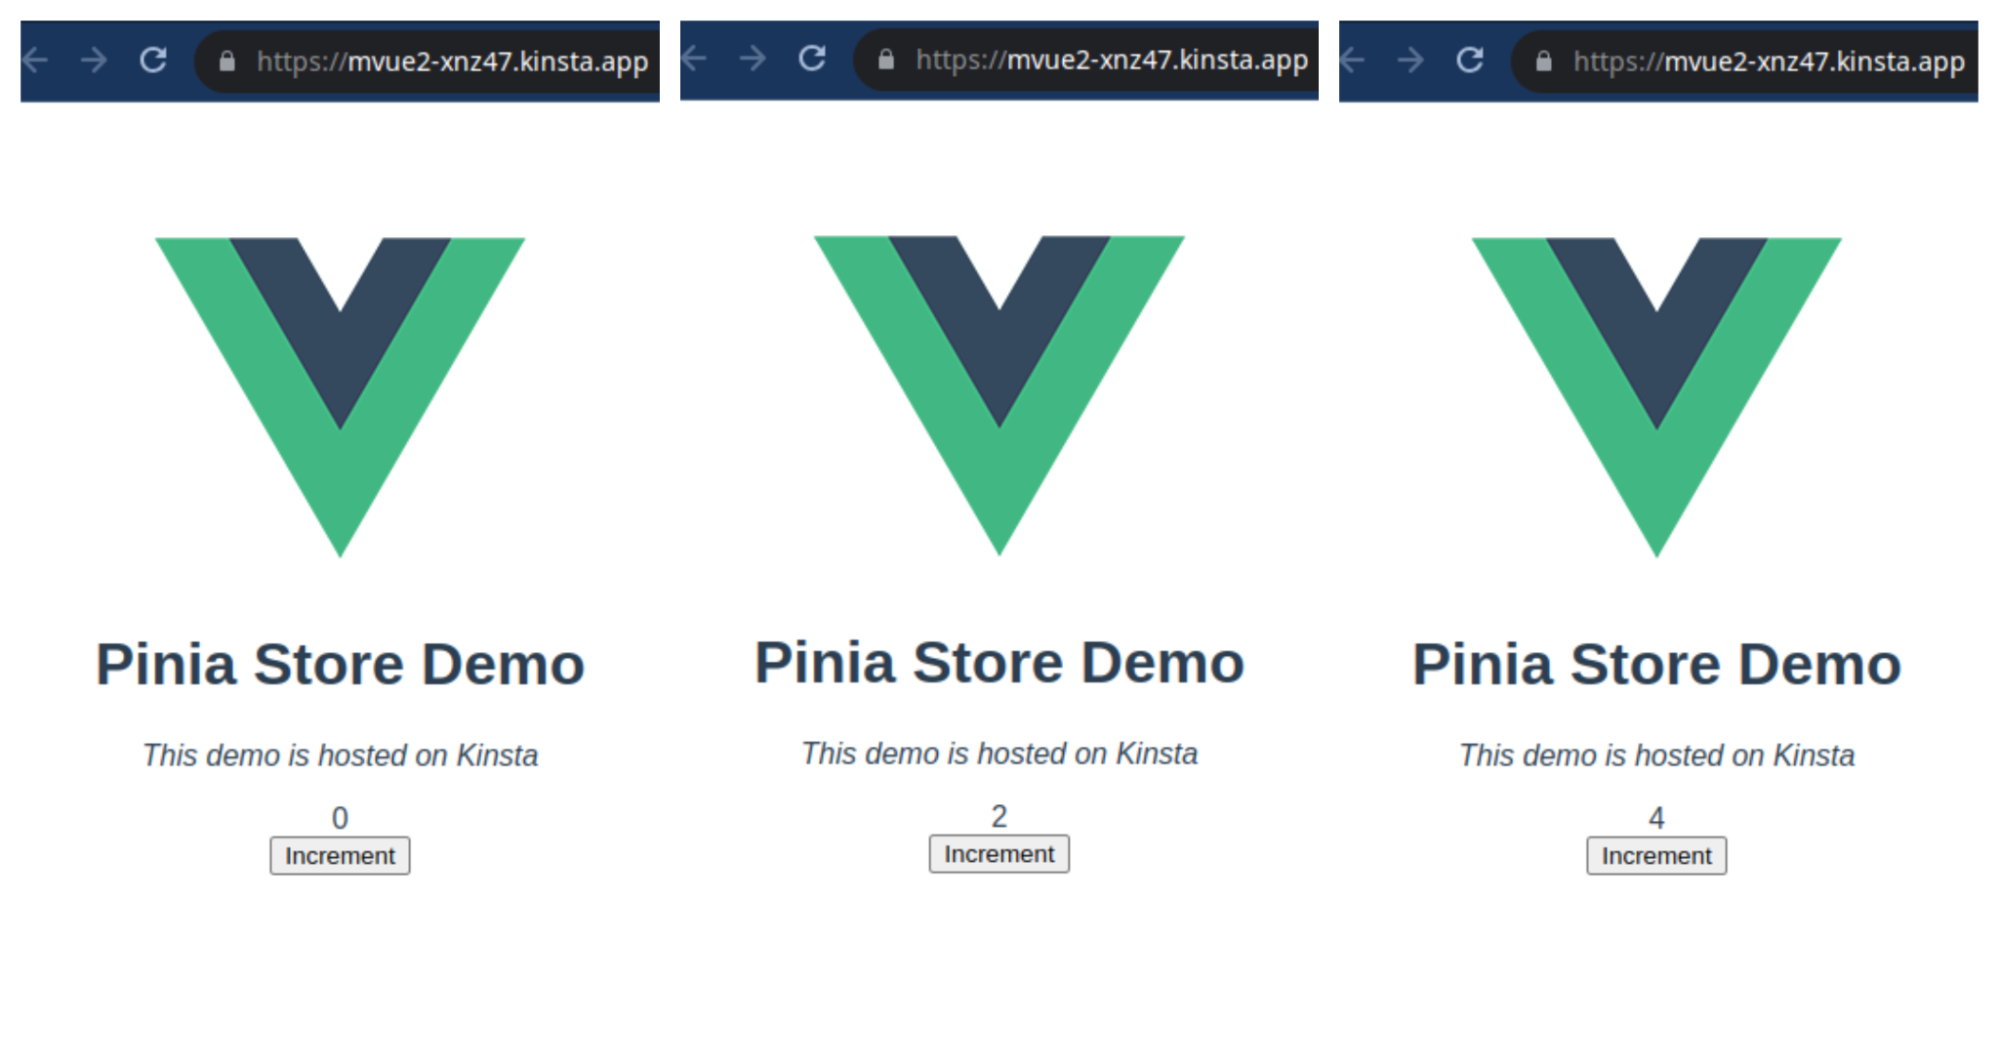 Screenshot der Pinia Store Demo Landing Page in verschiedenen Stufen: 0, 2, und 4.